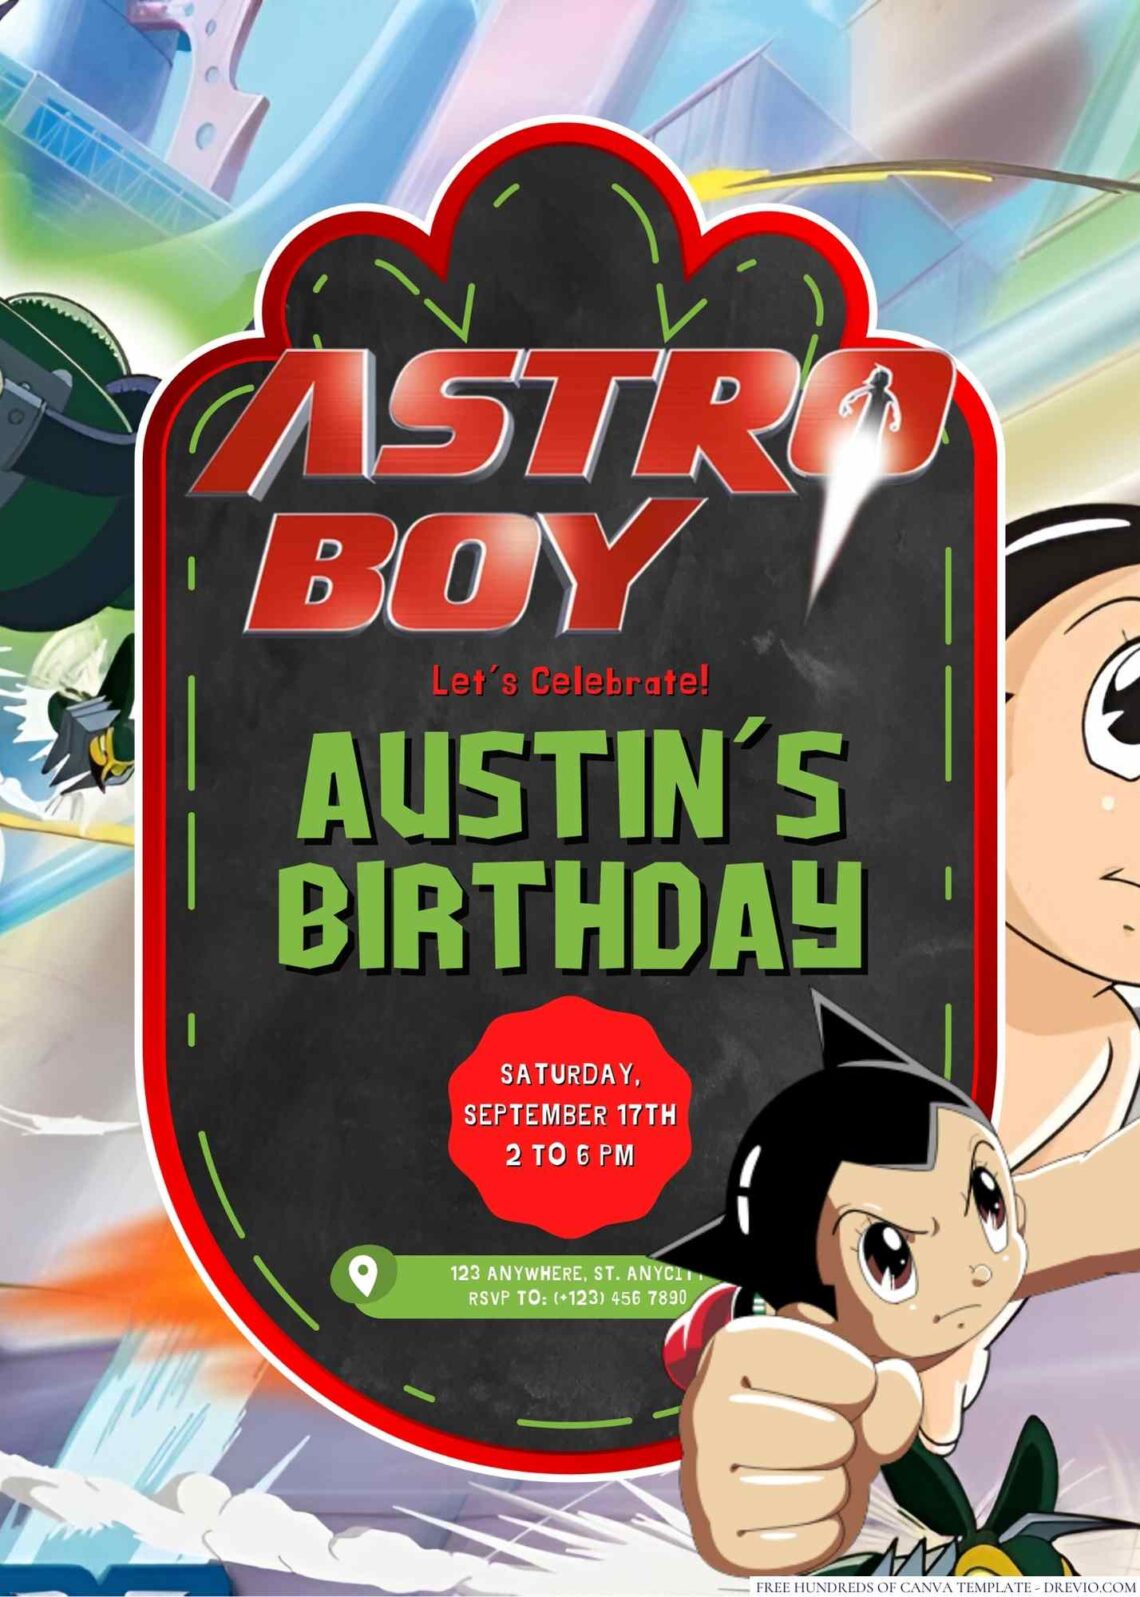 Astro Boy Birthday Invitation